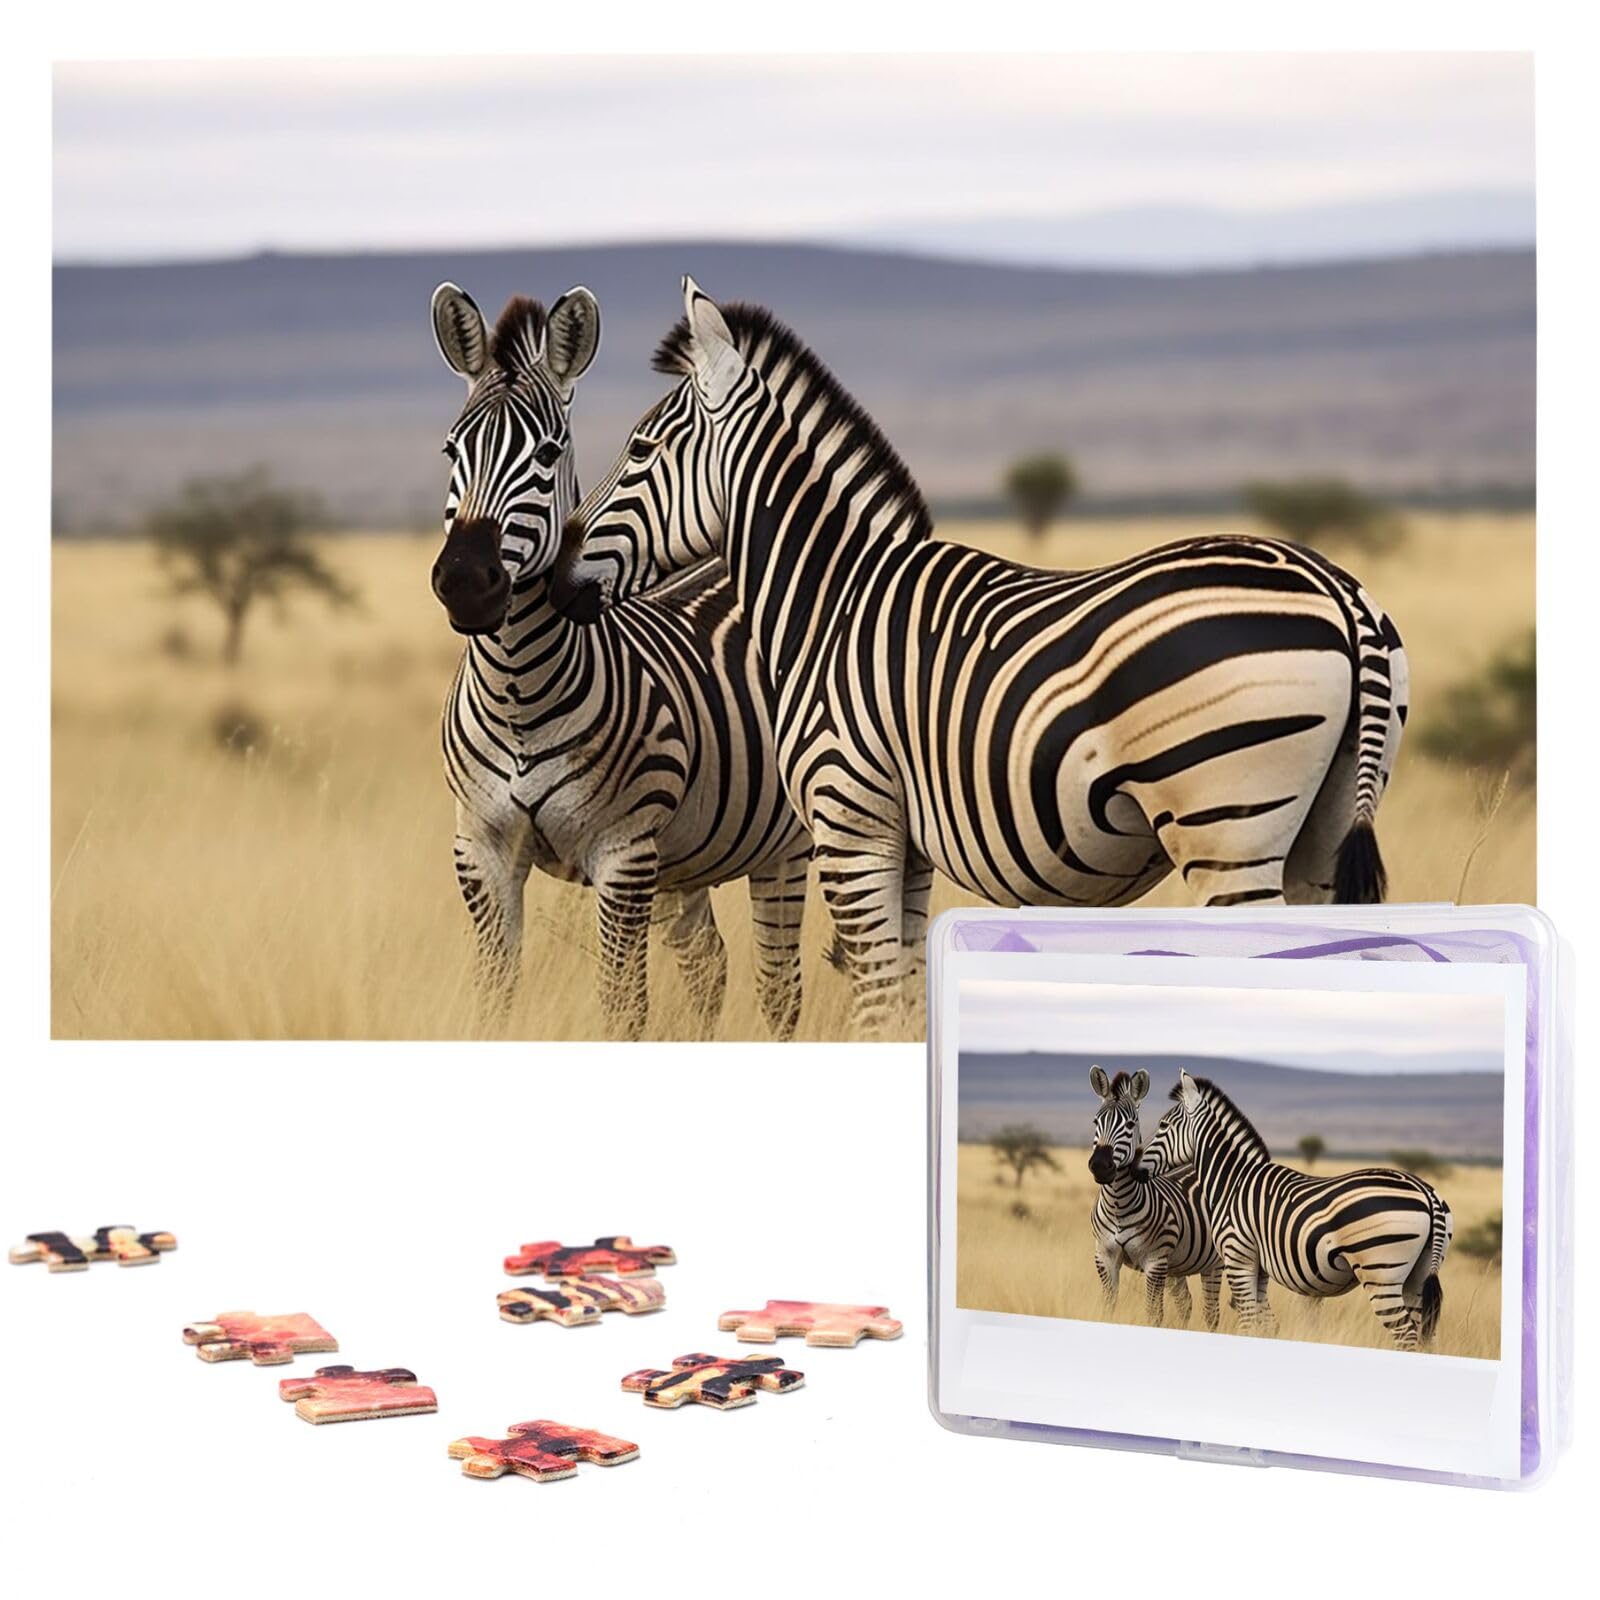 Jigsaw Puzzles 1000 Teile Für Erwachsene Zebras auf Südafrika Jigsaw Puzzle Coole Tier Weihnachten Puzzle Geschenk Puzzle Für Familie Größe 75 X 50 cm